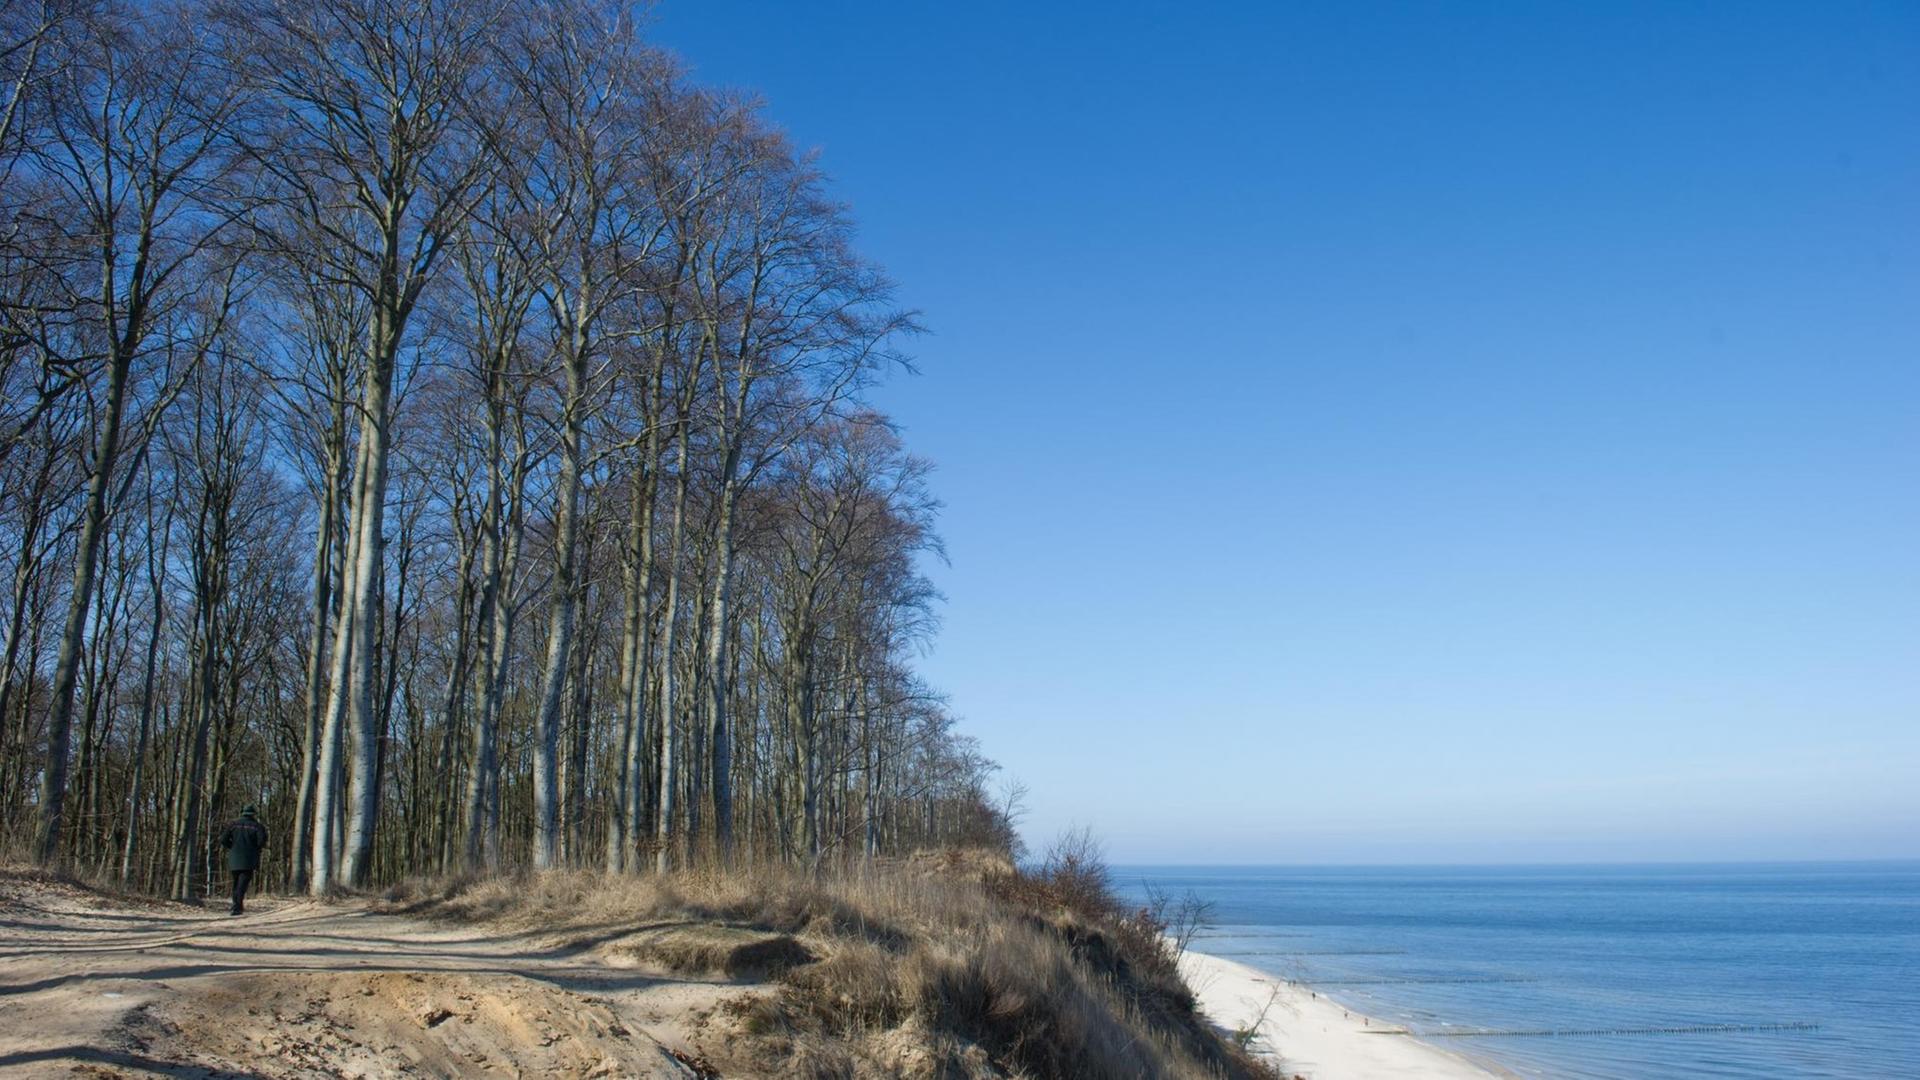 Der Usedomer Küstenwald am 18.03.2016 bei Bansin (Mecklenburg-Vorpommern). Der Usedomer Küstenwald wurde als "Waldgebiet des Jahres 2016" ausgezeichnet.